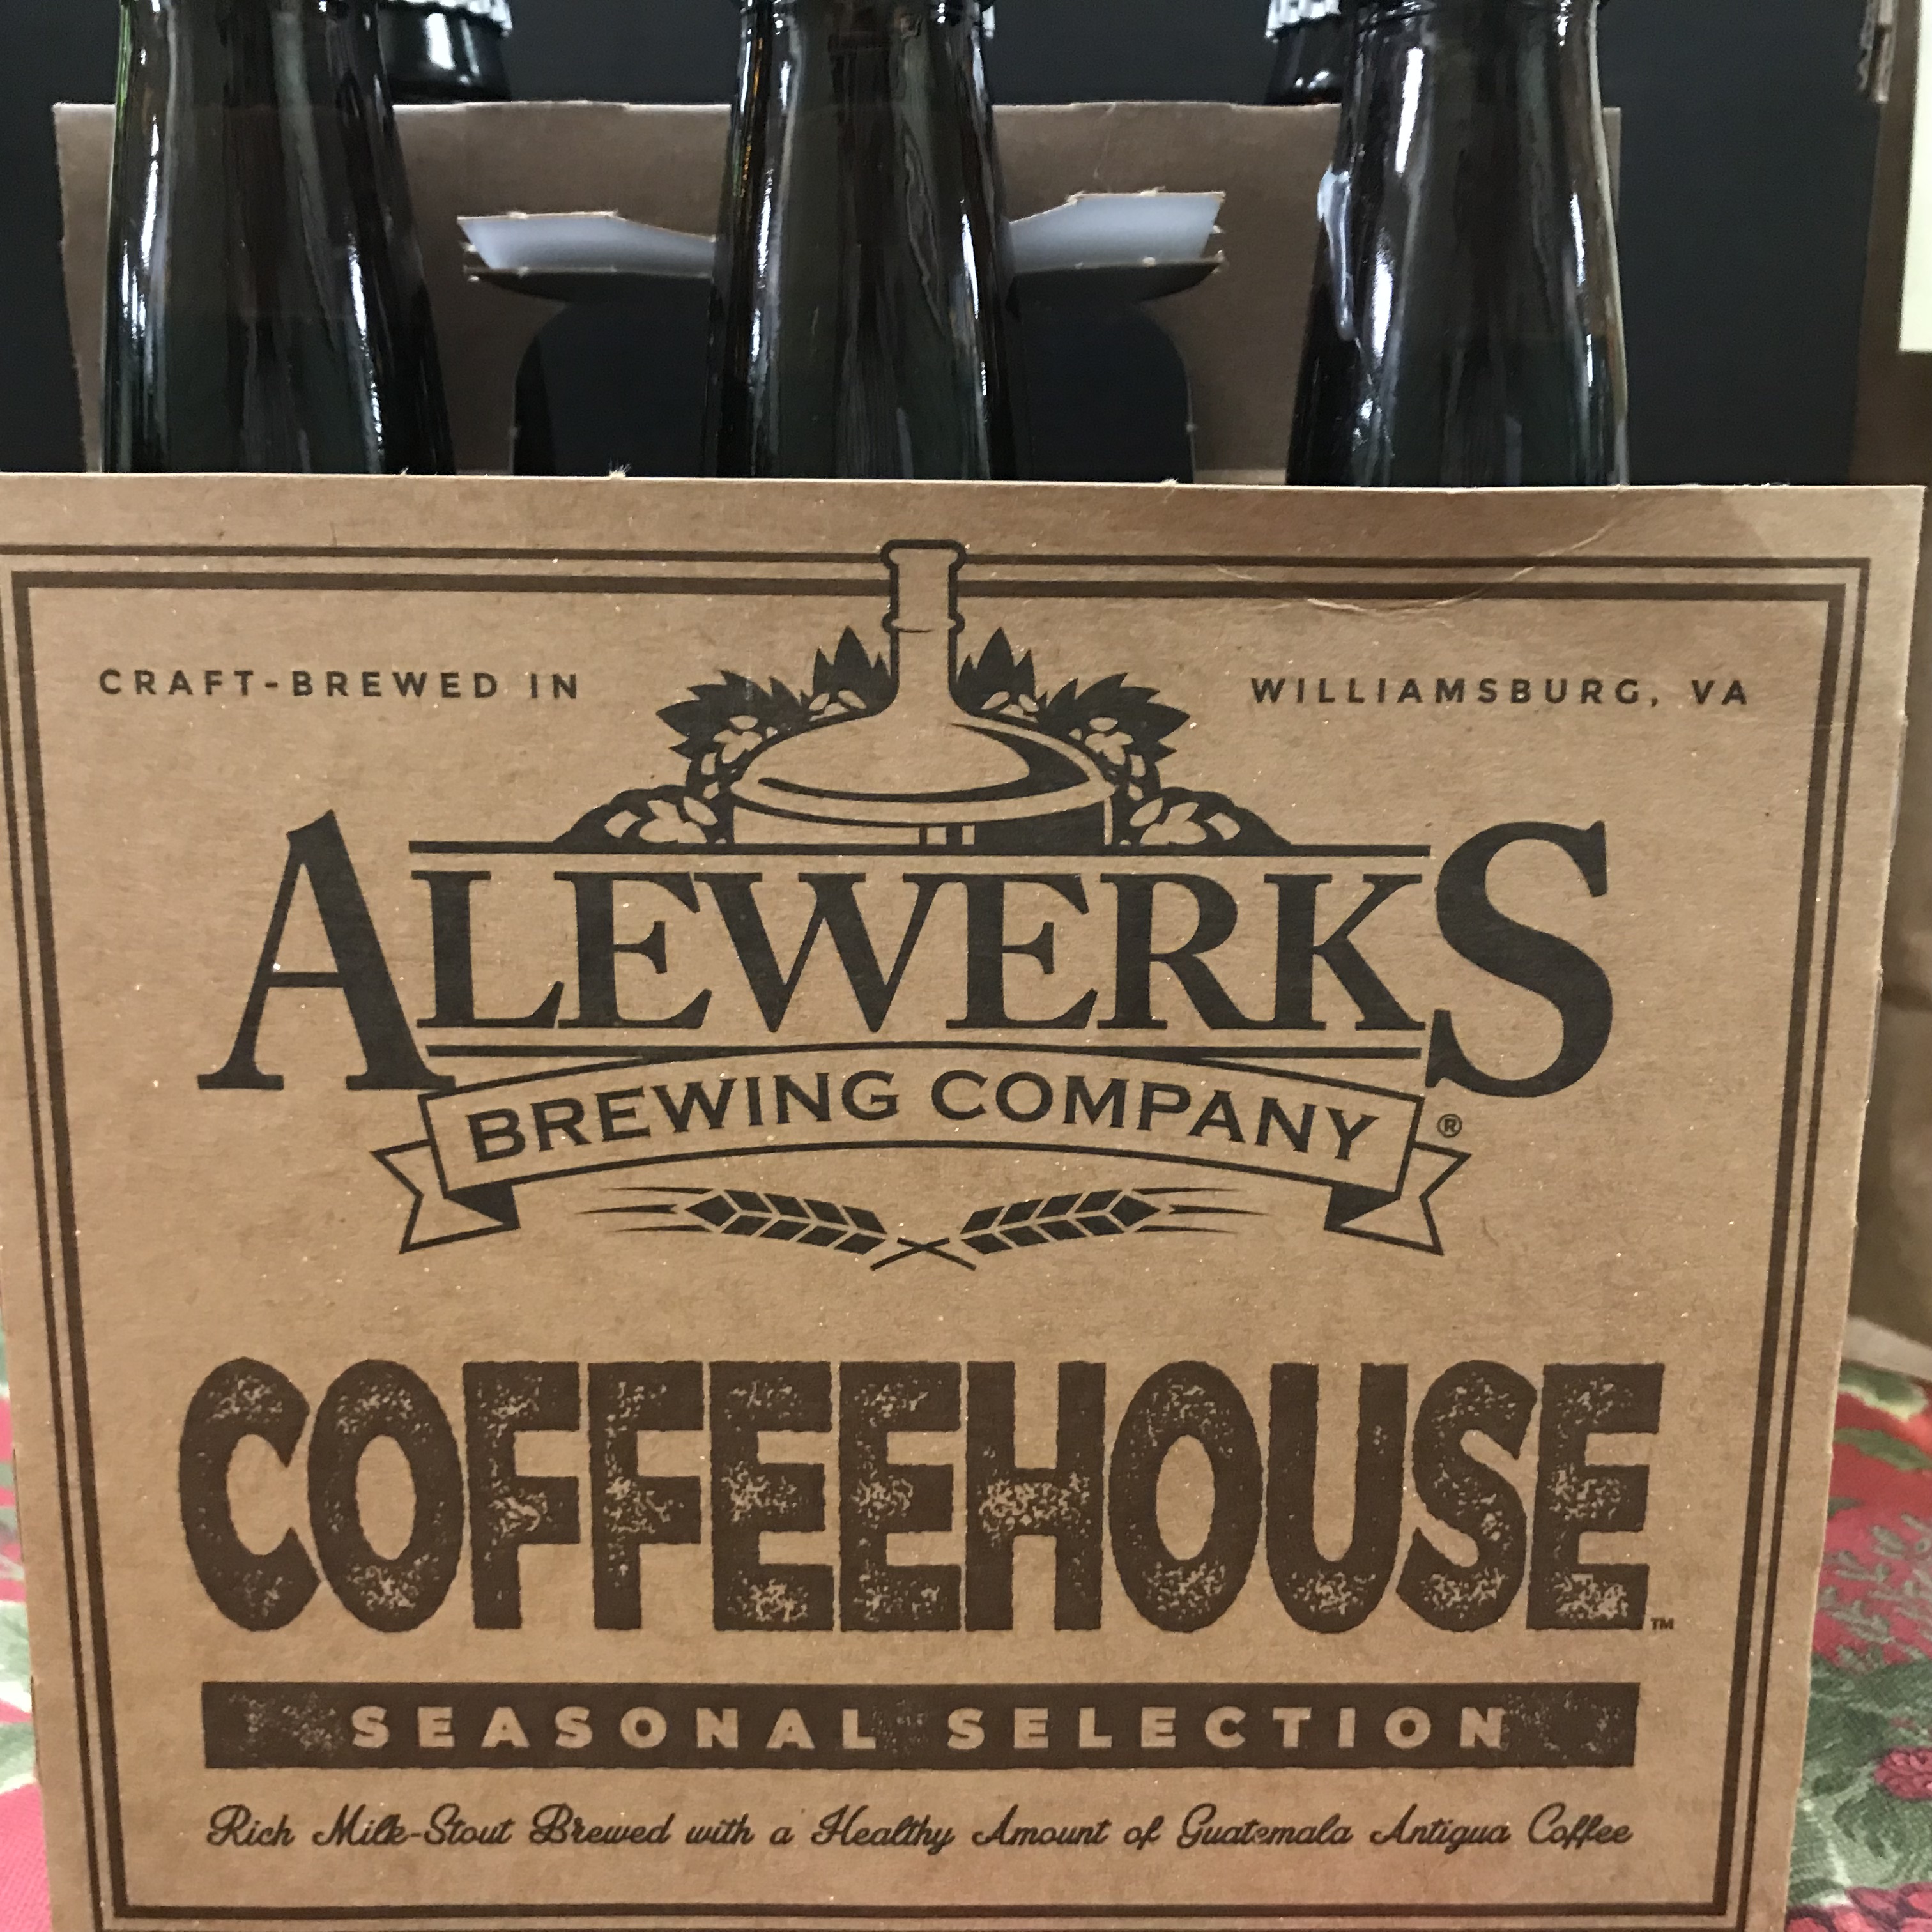 Alewerks Coffeehouse Seasonal 6 pack 12 oz bottles